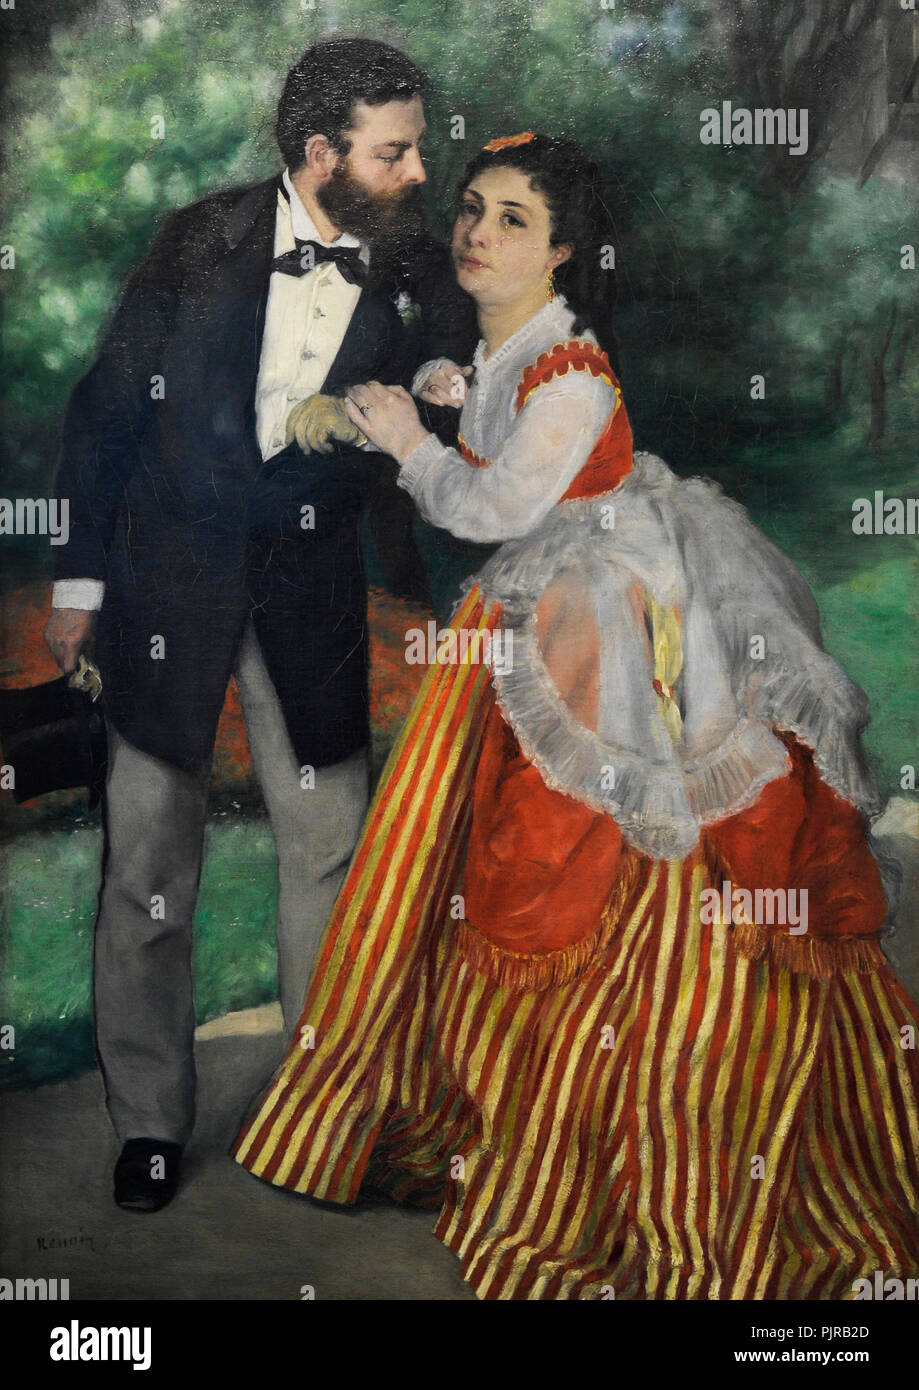 Pierre-Auguste Renoir (1841-1919). Le peintre français. Le couple, 1868. Musée Wallraf-Richartz. Cologne. L'Allemagne. Banque D'Images